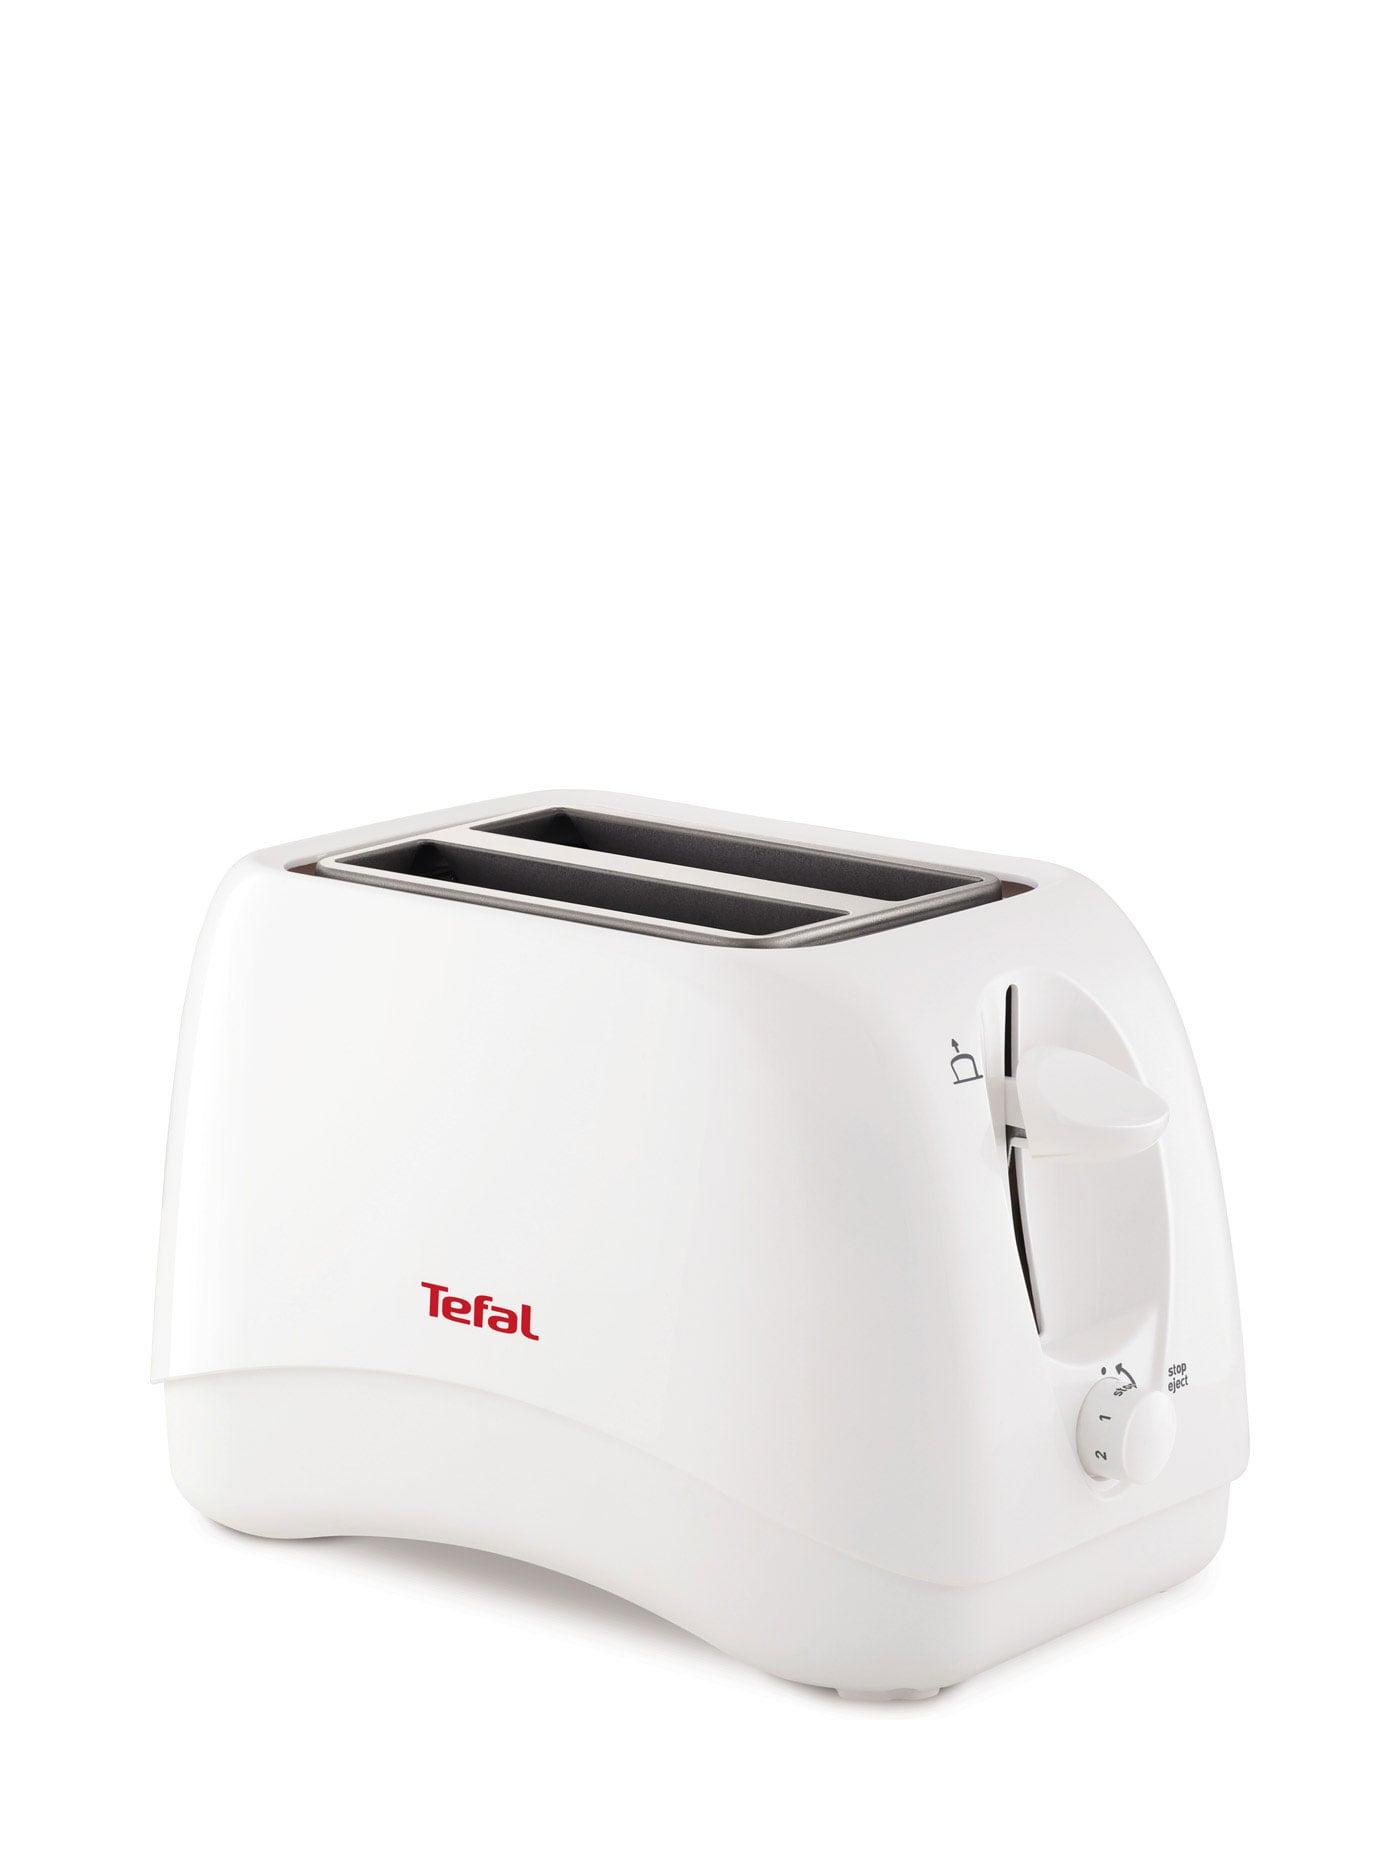 ยี่ห้อนี้ดีไหม  น่าน TEFAL เครื่องปิ้งขนมปัง รุ่น TT1321TH สีขาว toasters  makers